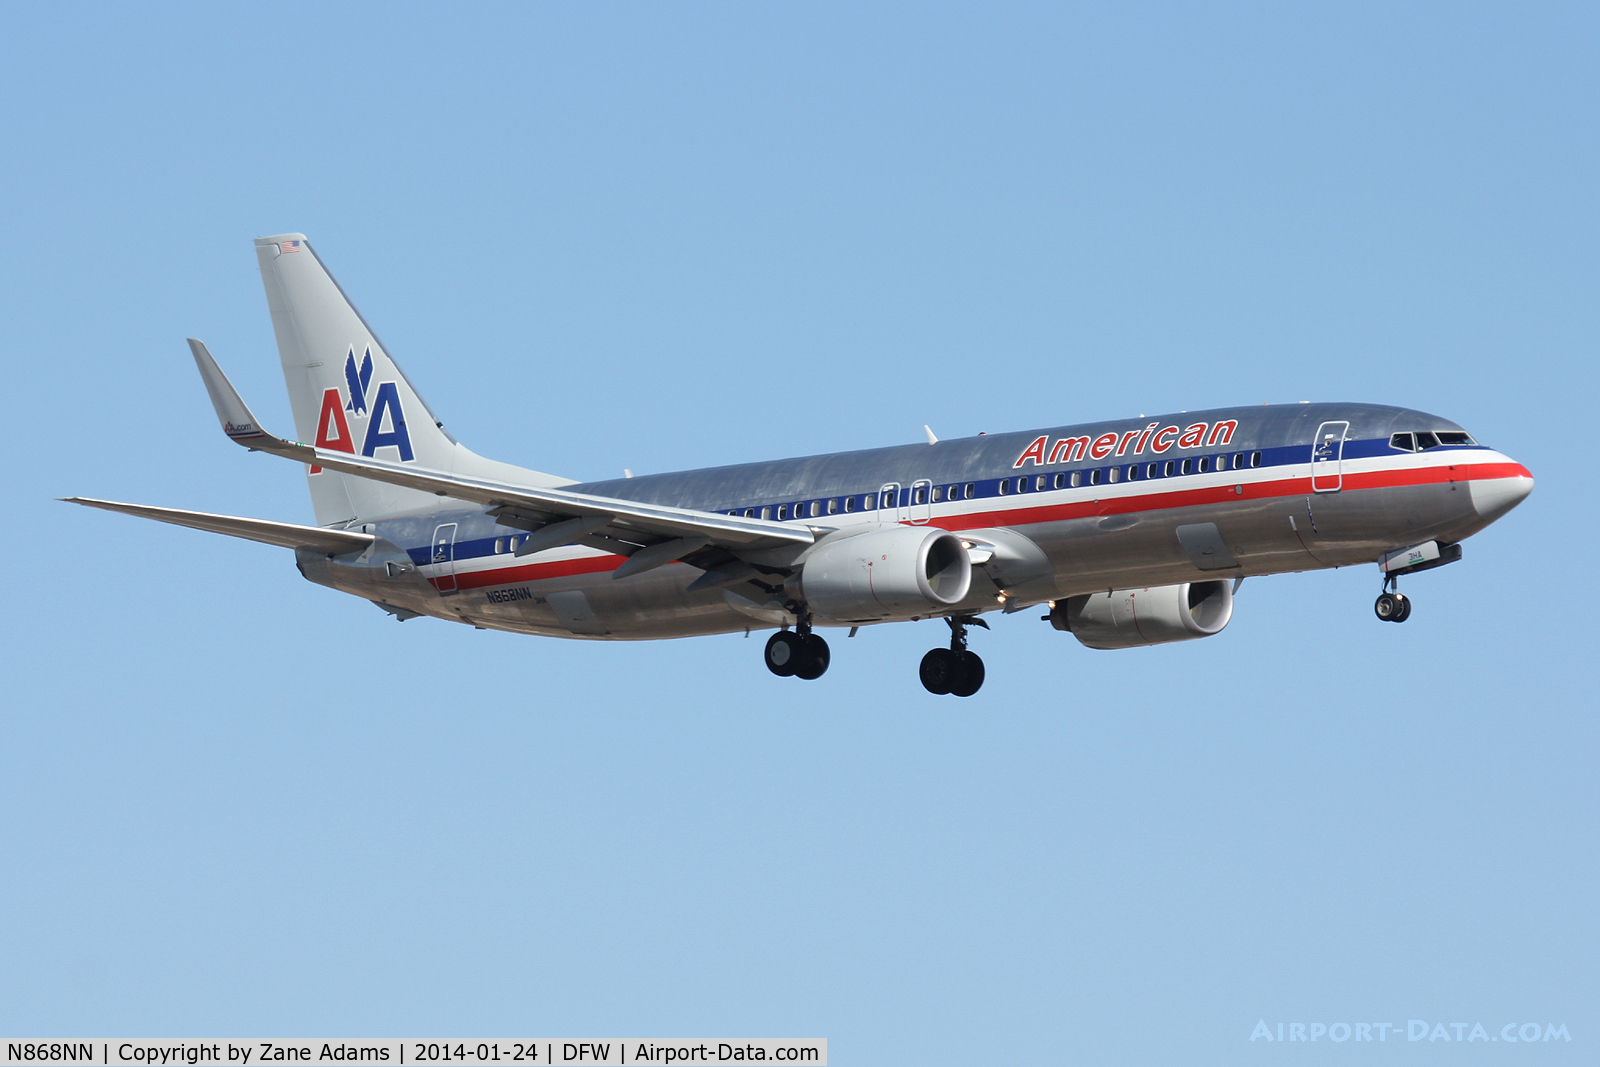 N868NN, 2011 Boeing 737-823 C/N 40763, American Airlines at DFW Airport